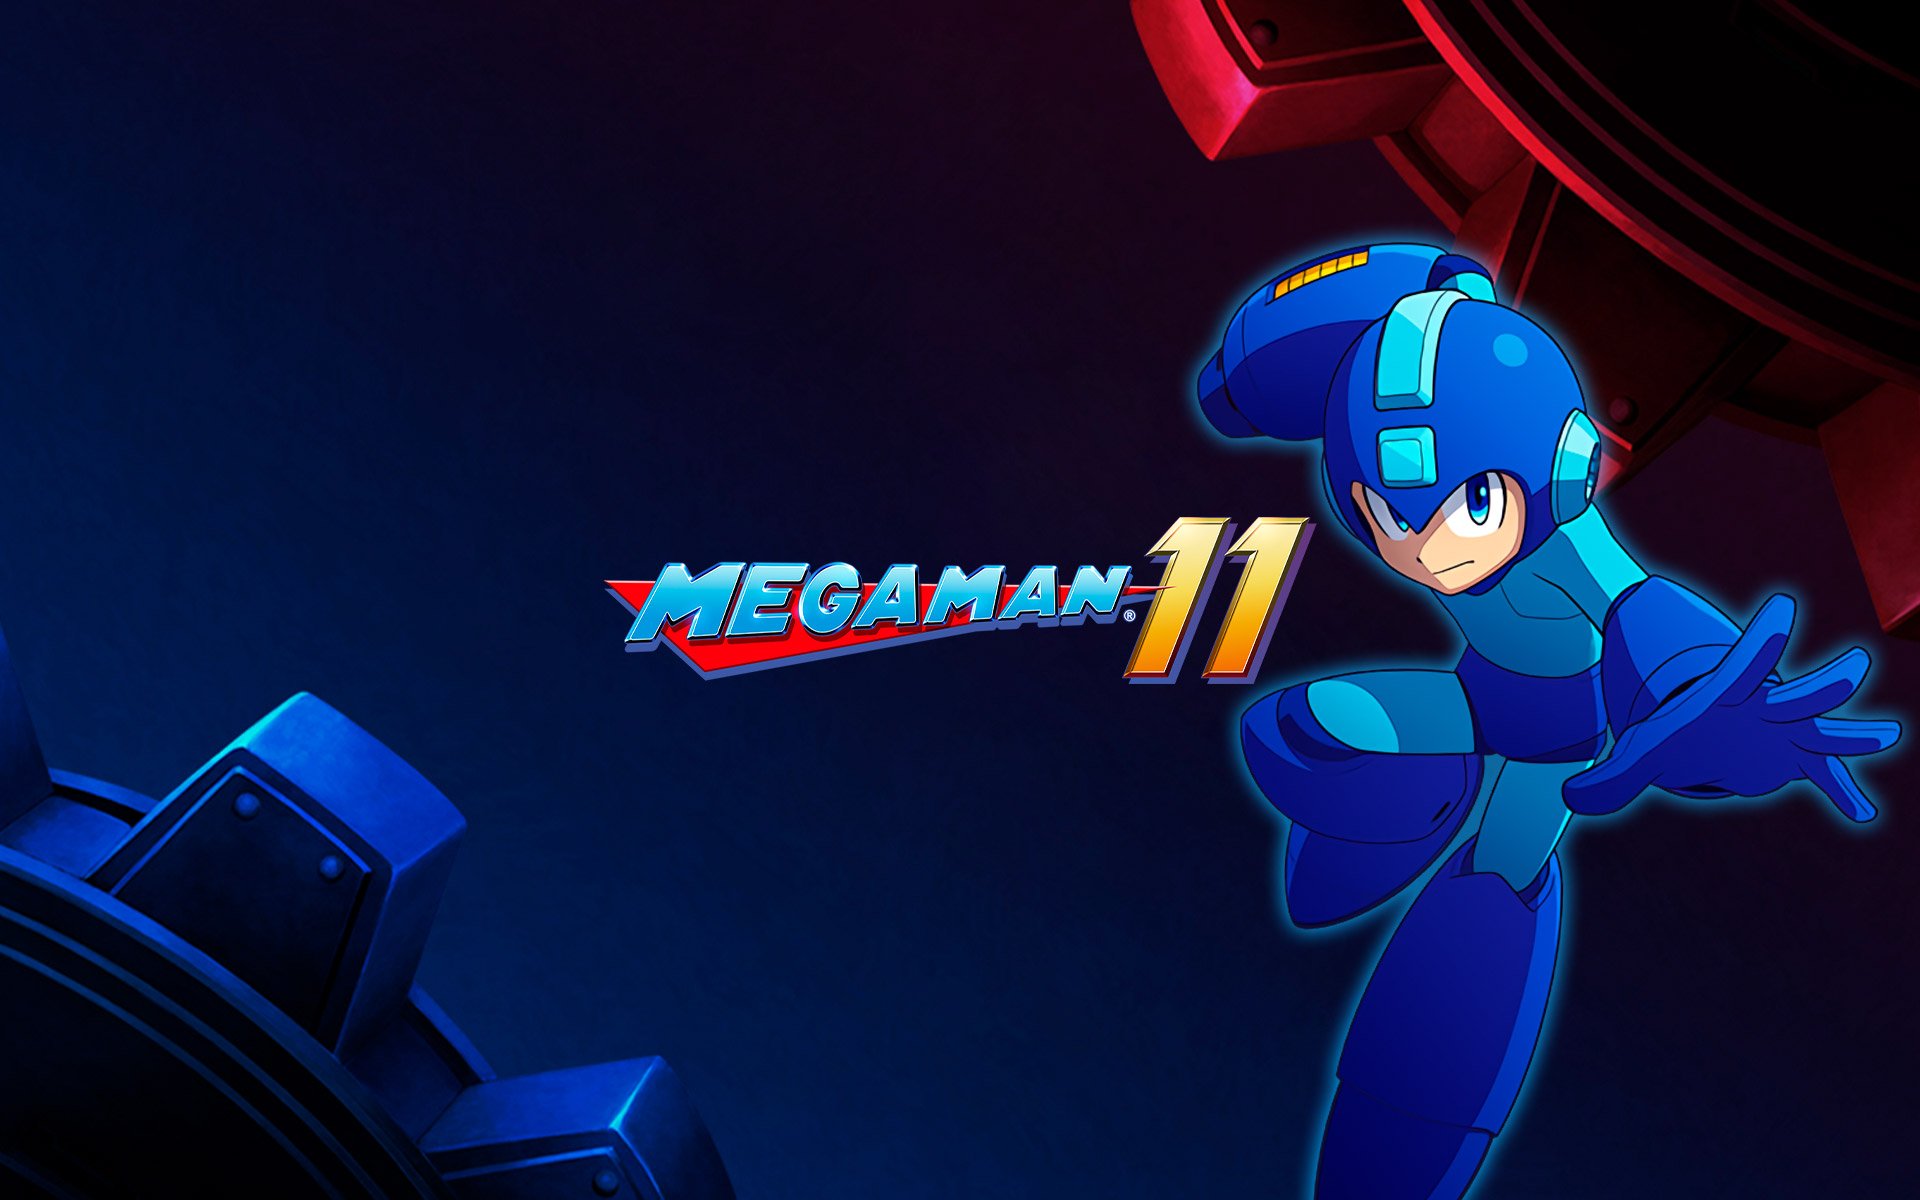 Compre Mega Man a partir de R$ 69.99